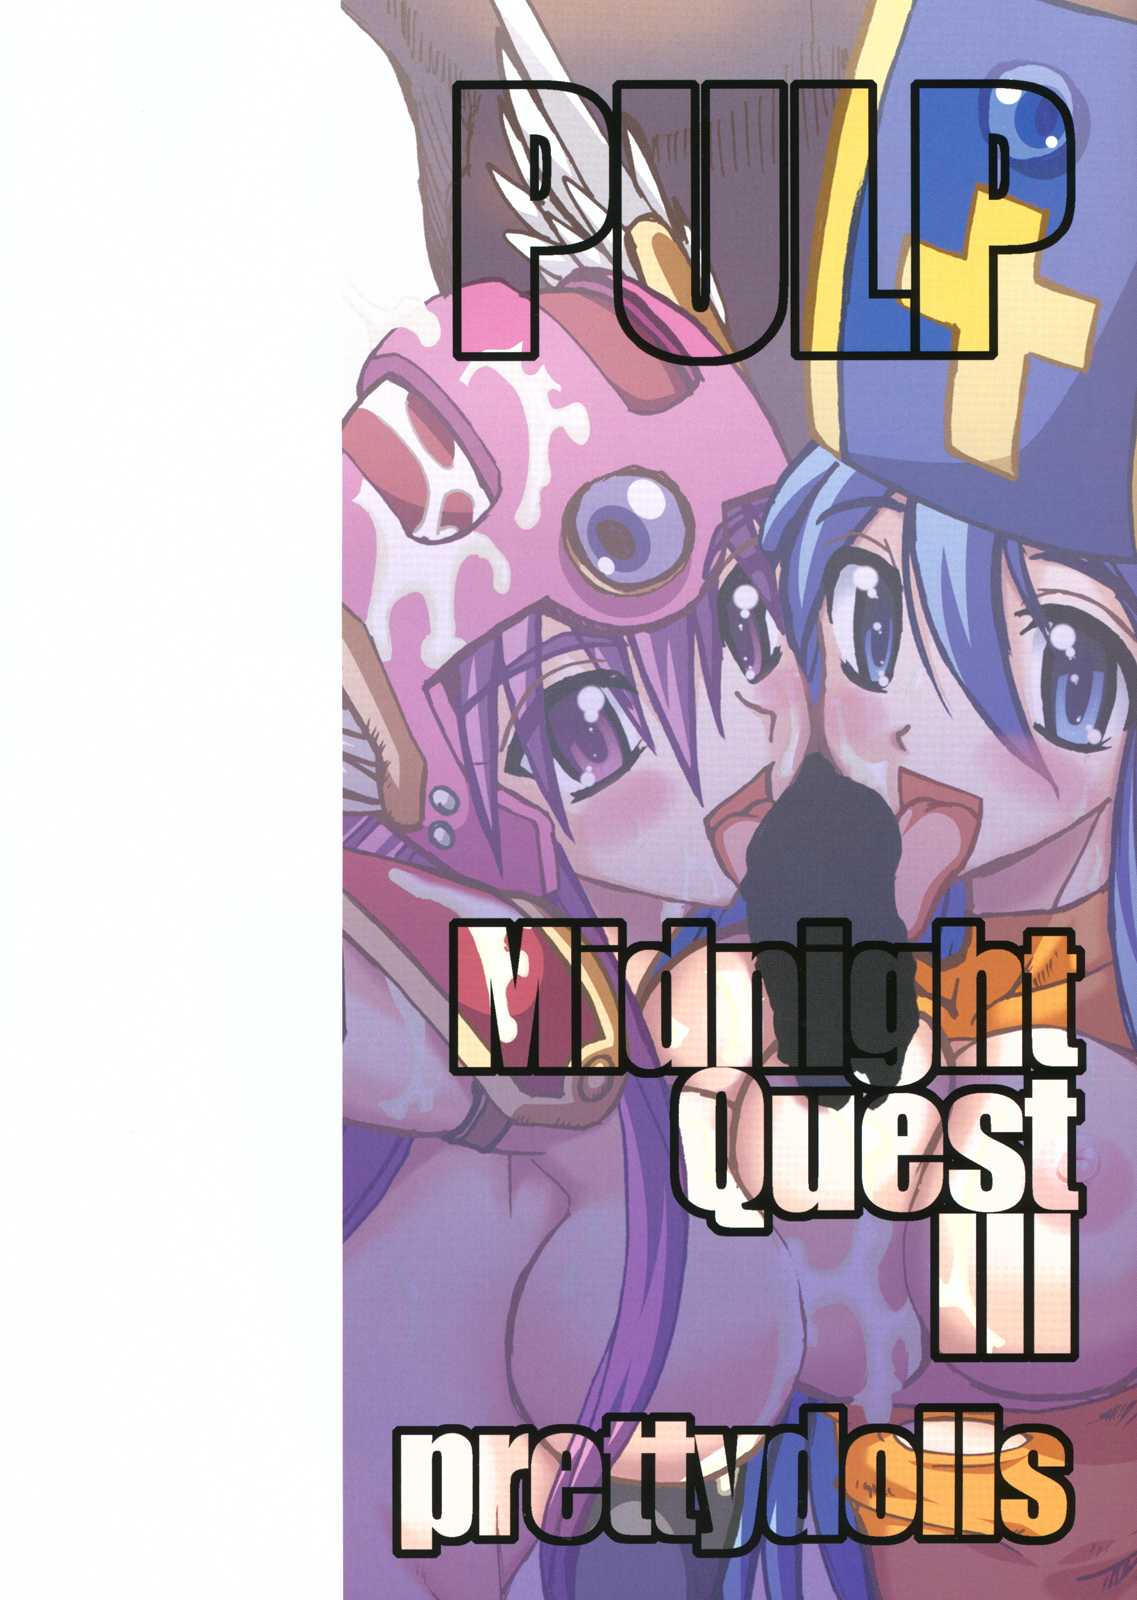 (C80) [Prettydolls (Araki Hiroaki)] PULP Midnight Quest III (Dragon Quest III) (C80) [Prettydolls(あらきひろあき)] PULP Midnight Quest III (DQ3)